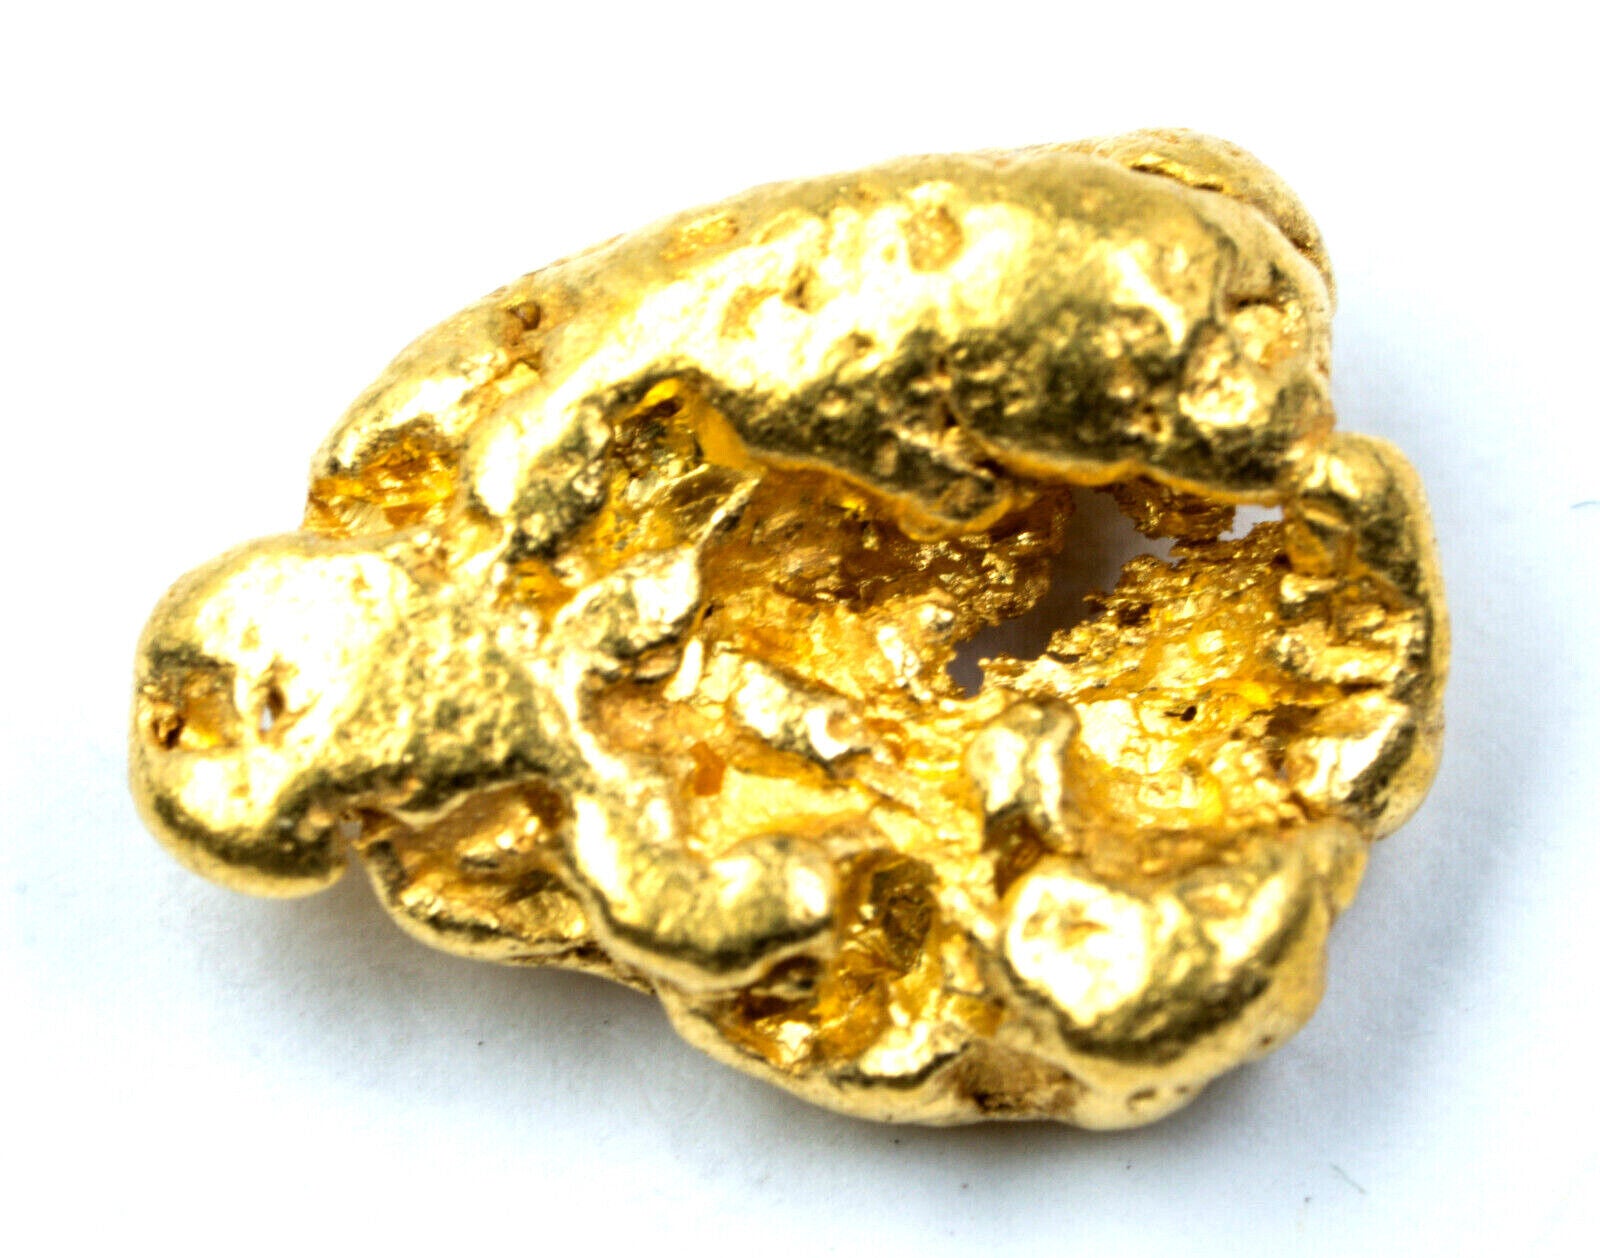 3.271 GRAMS ALASKAN NATURAL PURE GOLD NUGGET GENUINE (#N67)